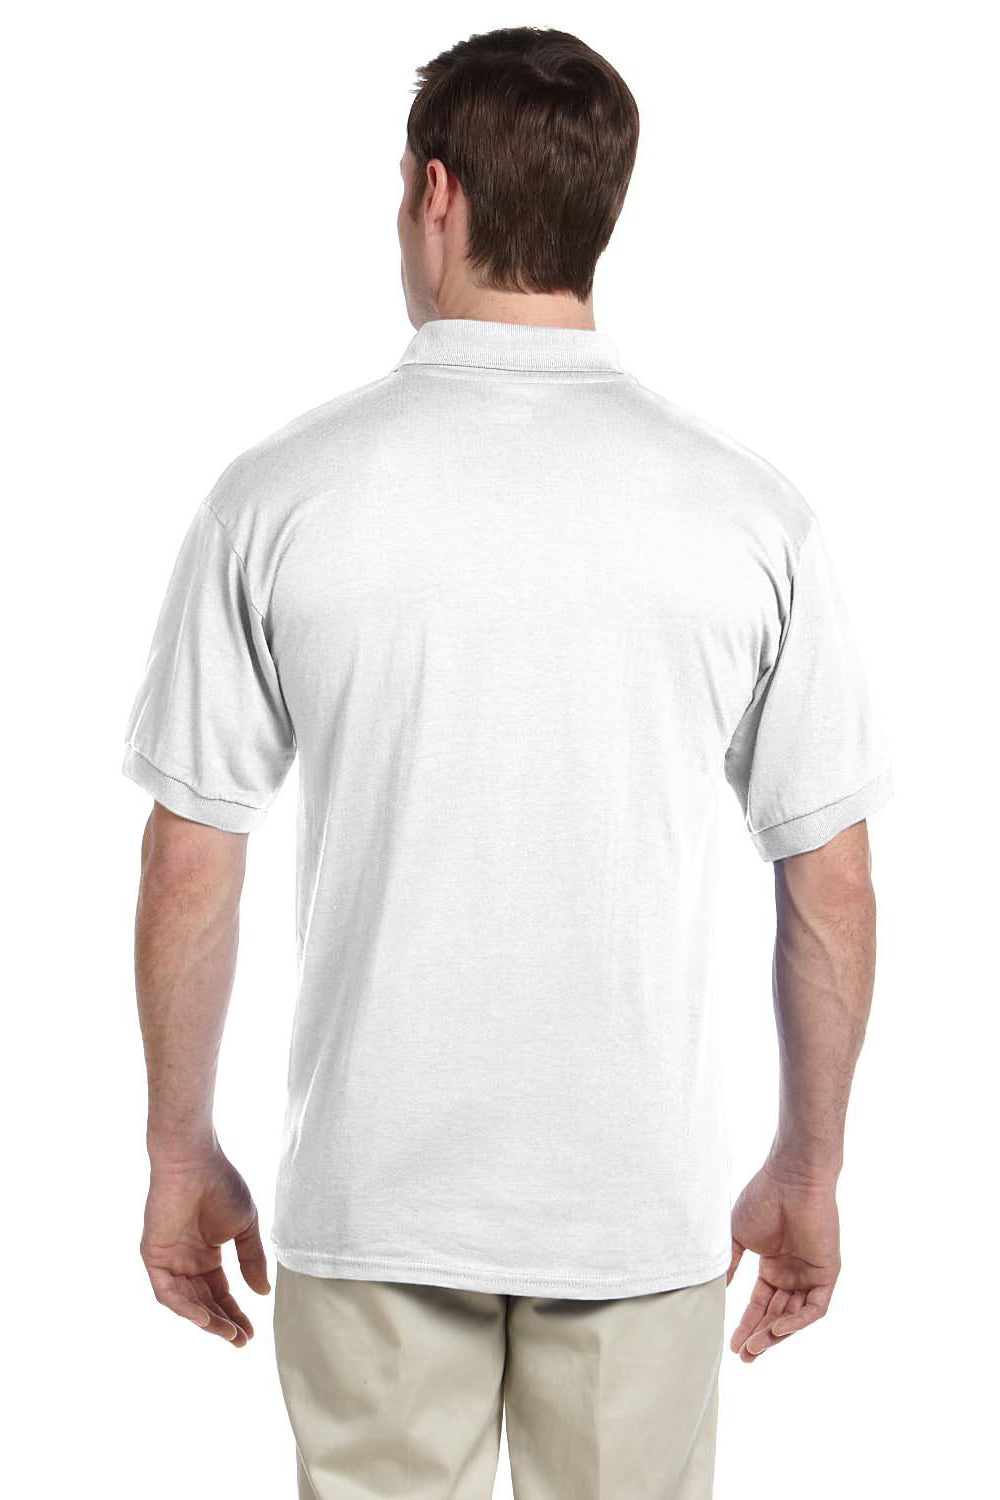 Gildan G890 Mens DryBlend Moisture Wicking Short Sleeve Polo Shirt w/ Pocket White Back